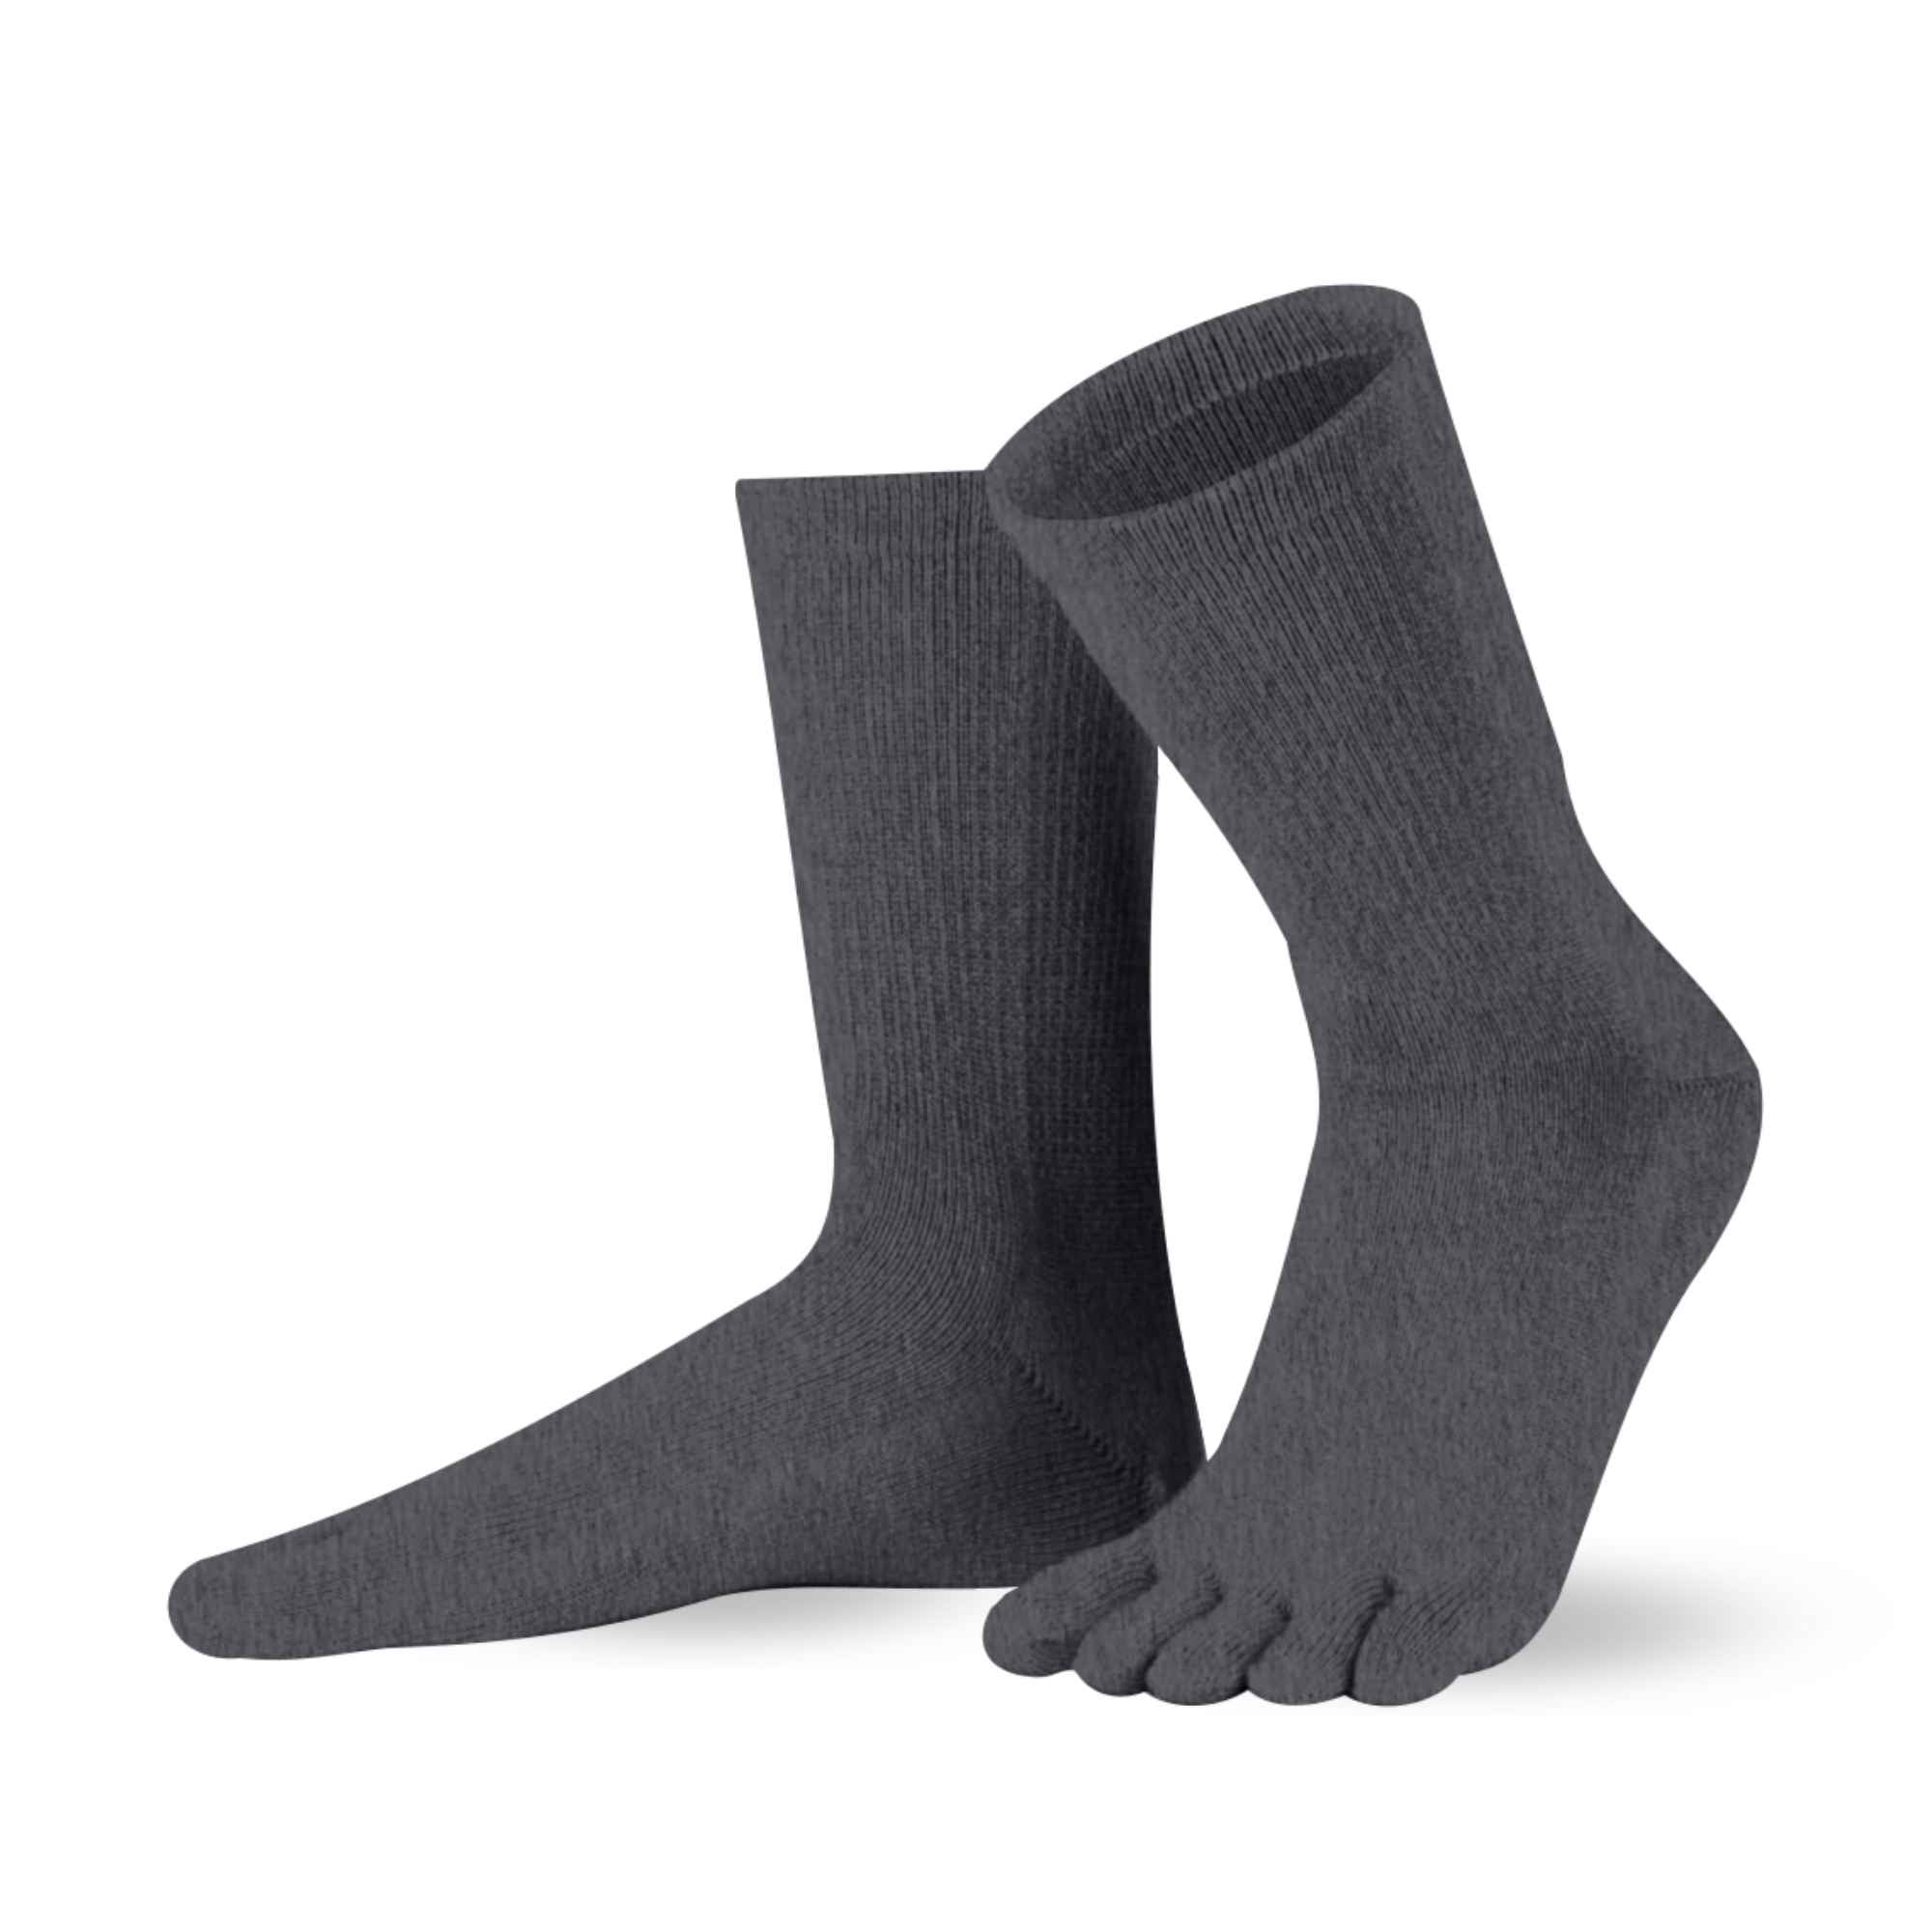 Cotton & Merino , longueur mollet - Knitido®. Le chaussettes à orteils